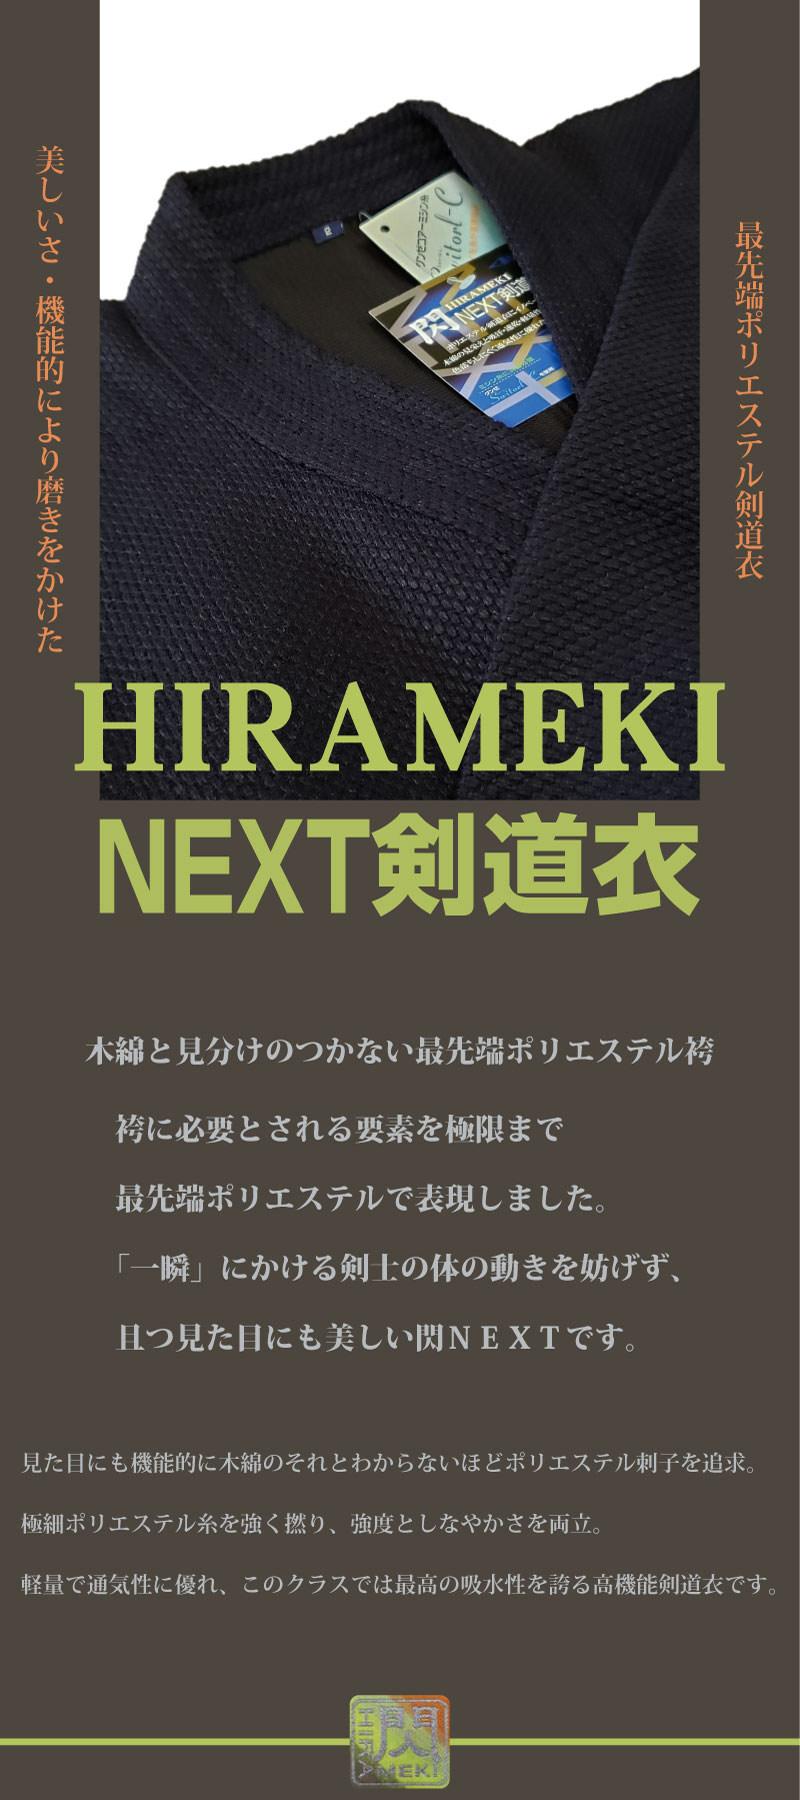 剣道 剣道着「閃」HIRAMEKI NEXT ポリエステル製 紺色 1L〜5号 刺繍